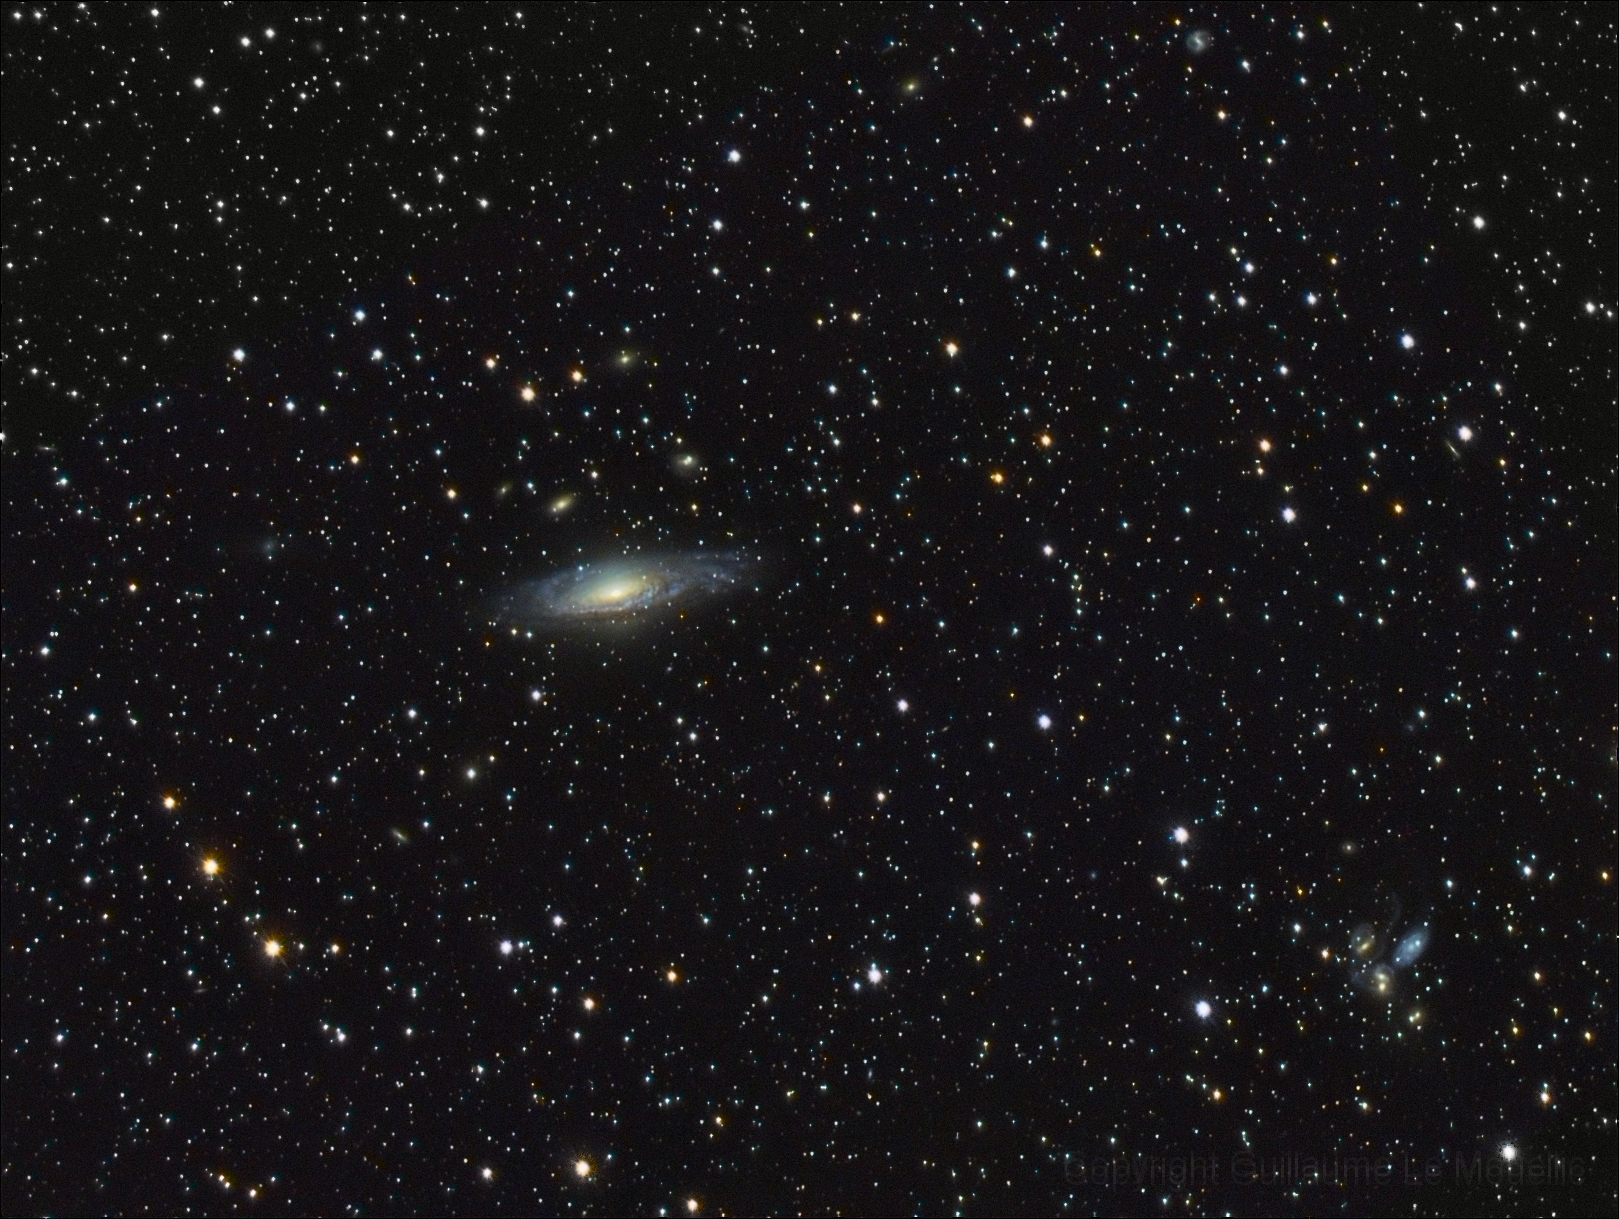 NGC7331 + Quintette de stephan